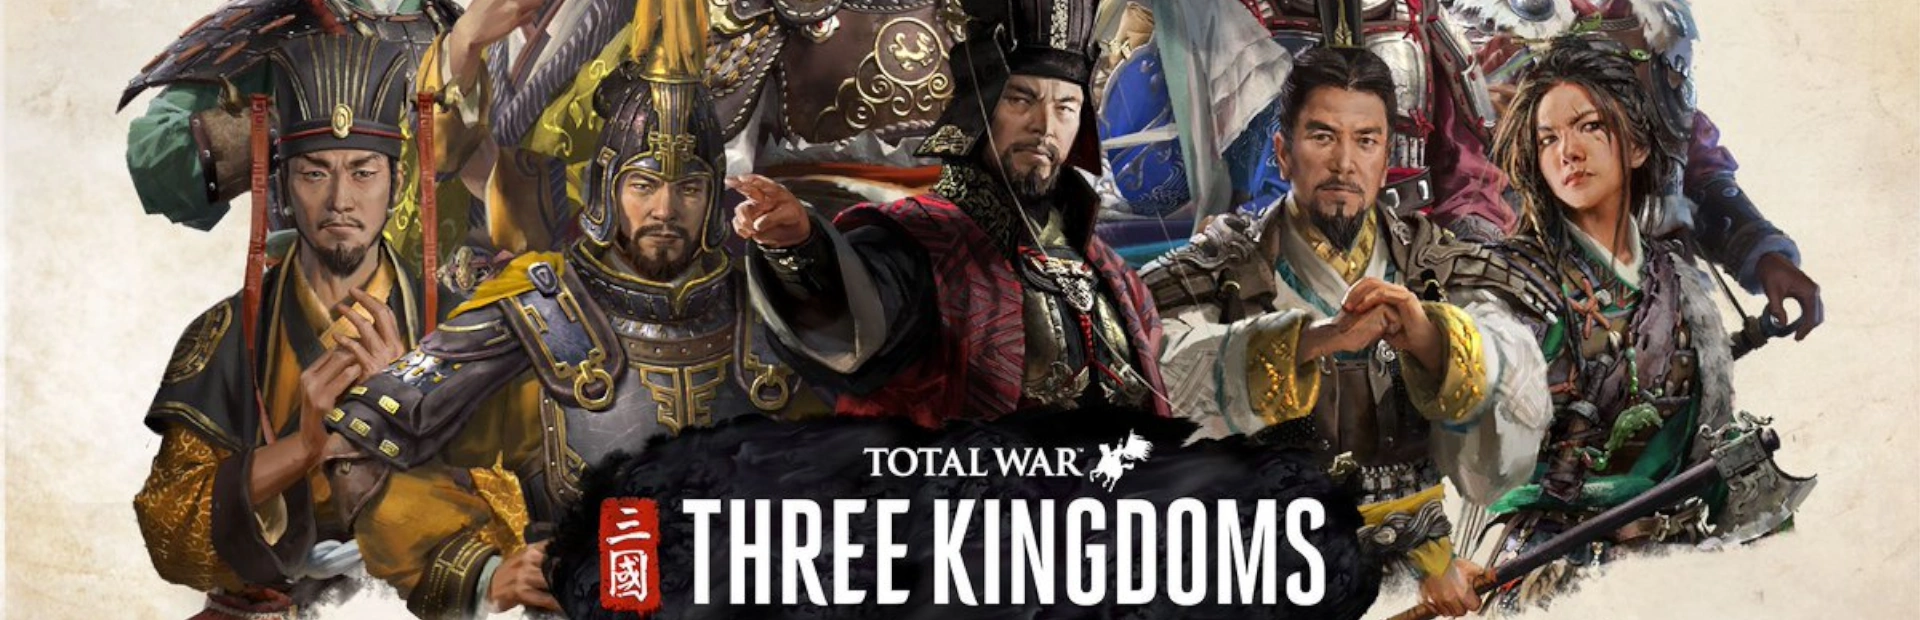 دانلود بازی TOTAL WAR: THREE KINGDOMS برای PC | گیمباتو